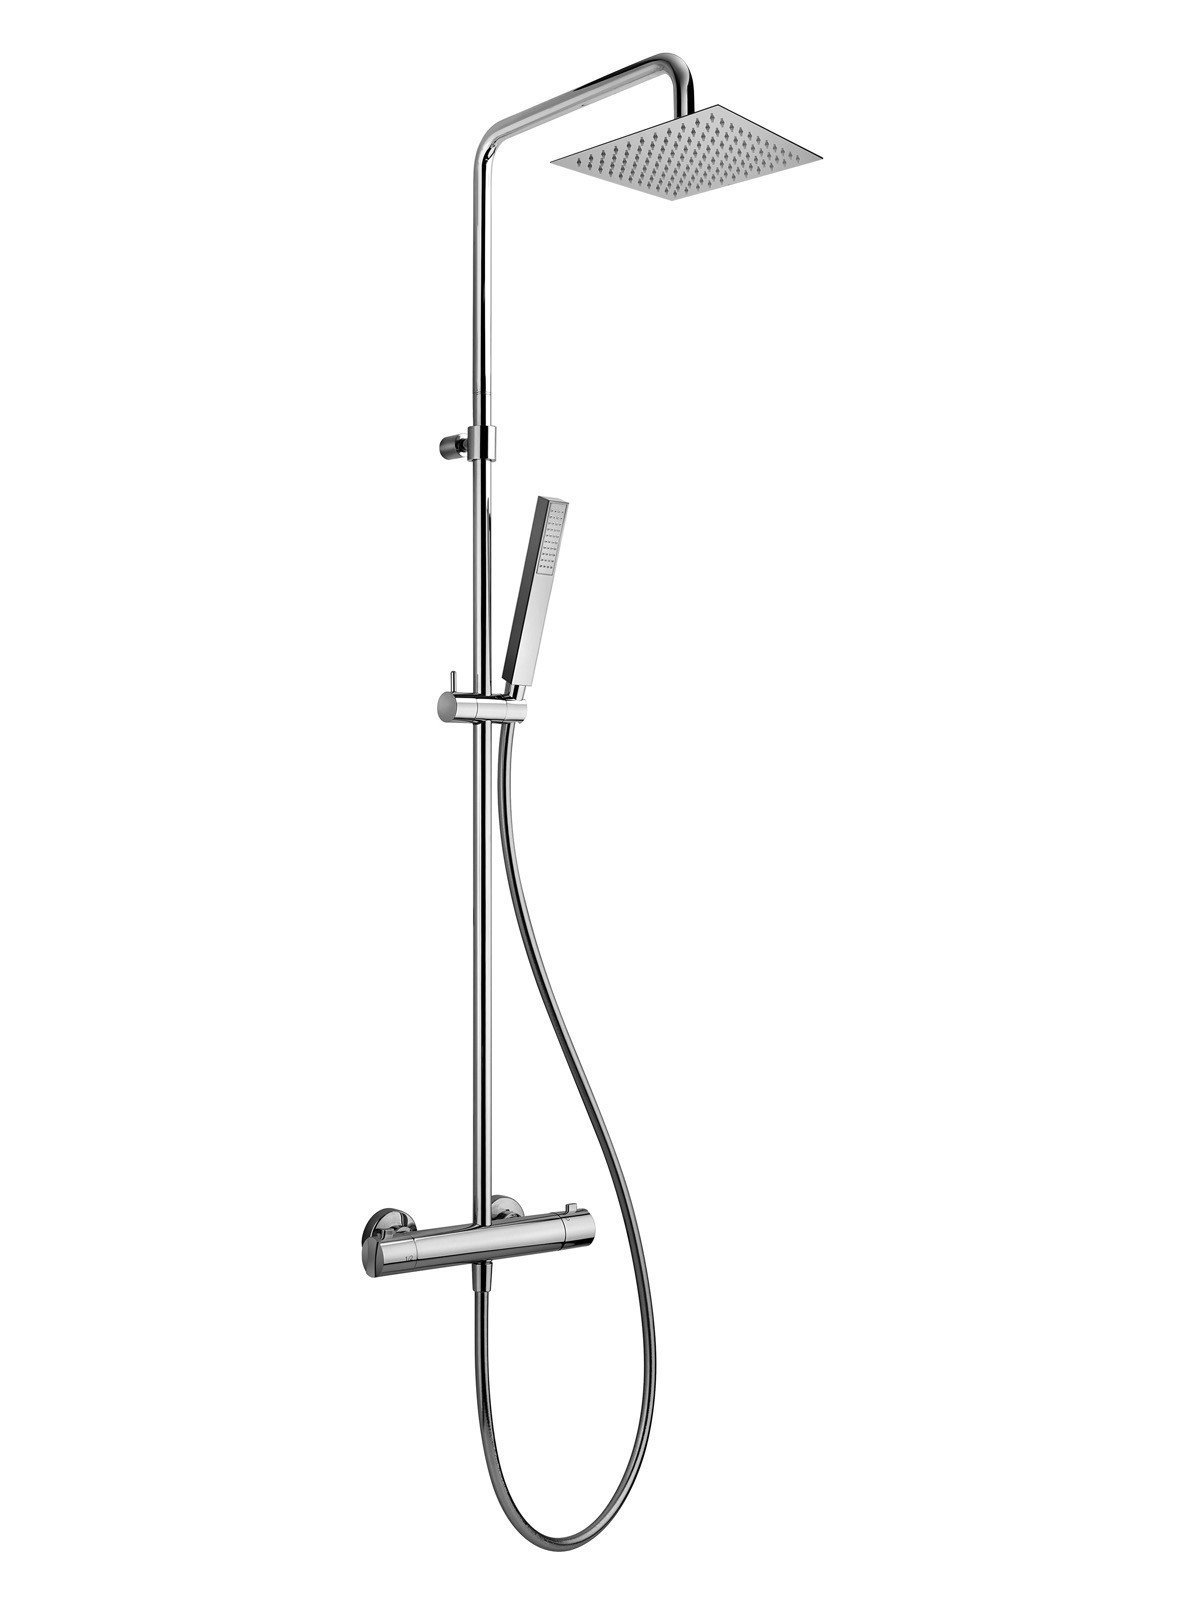 External part of shower mixer, cold water body, diverter, column